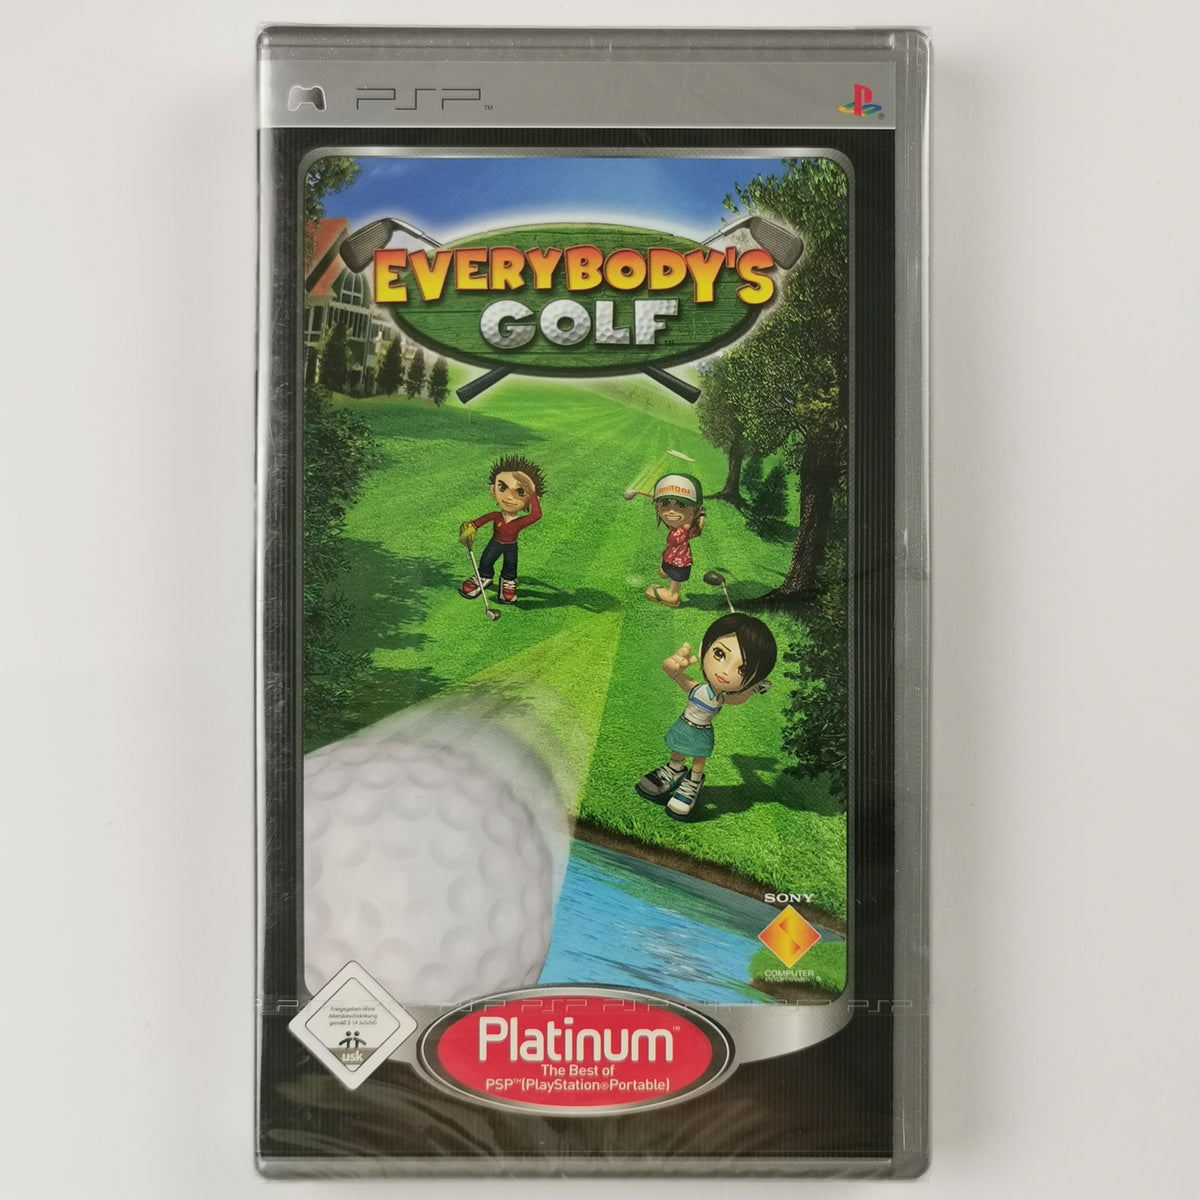 Everybodys Golf [Platinum] PSP [PSP]